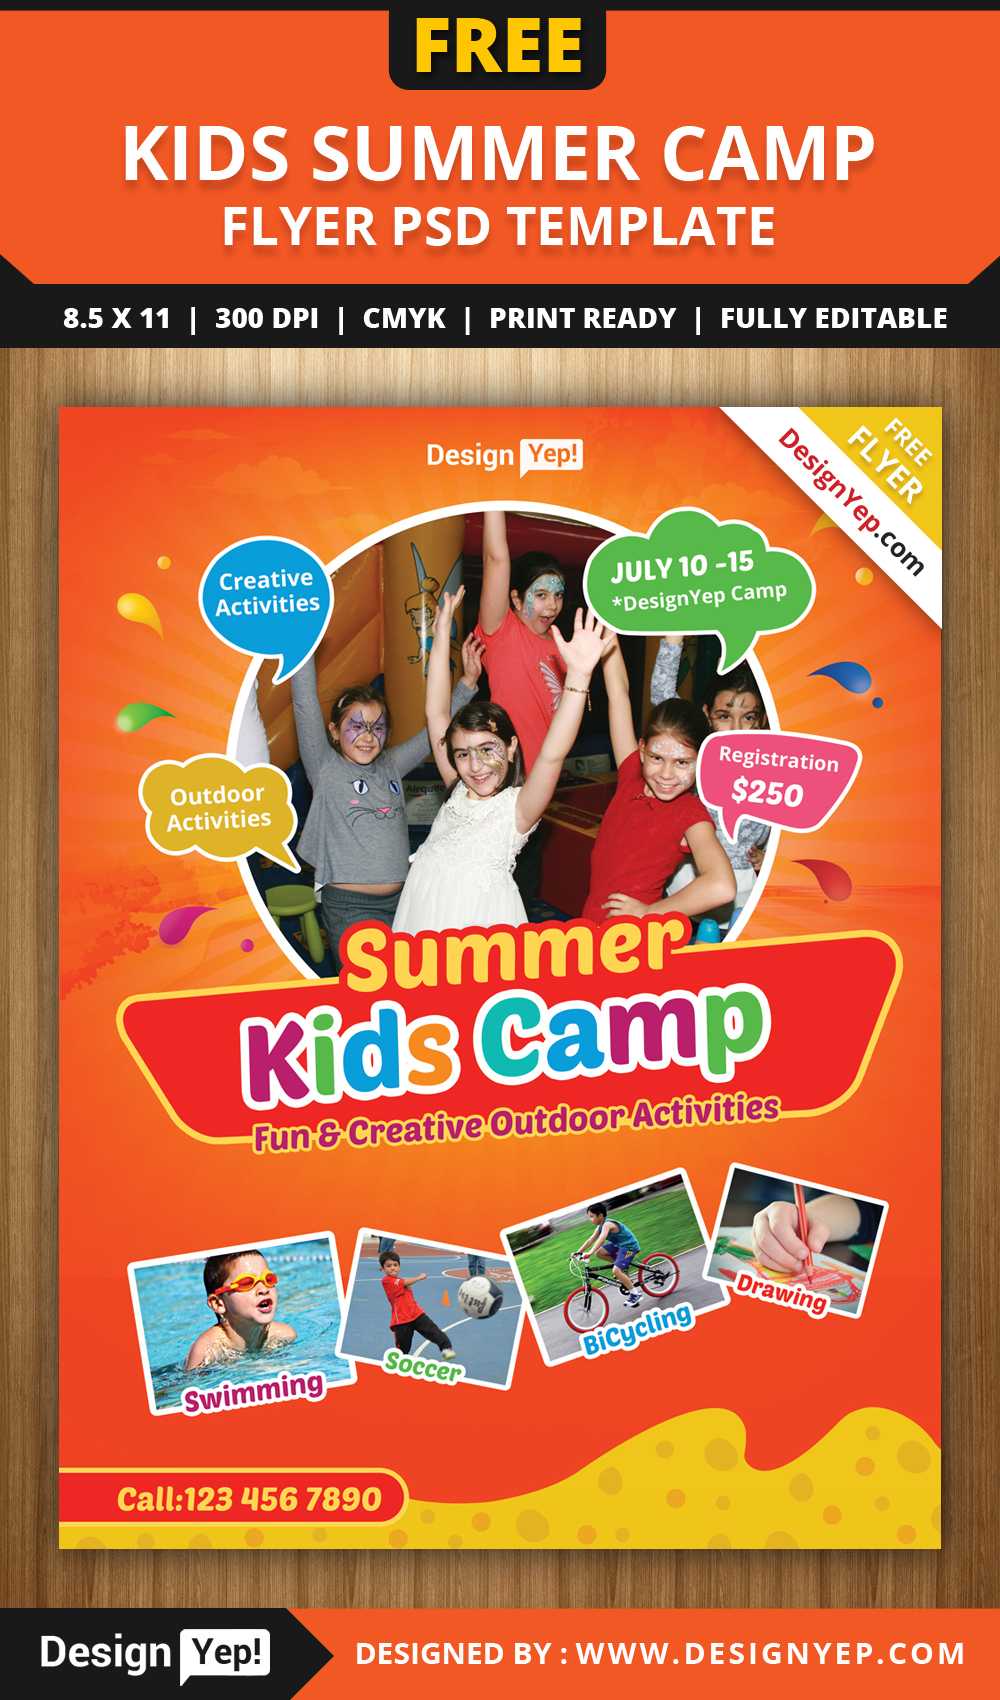 Free Kids Summer Camp Flyer Psd Template On Behance Regarding Summer Camp Brochure Template Free Download